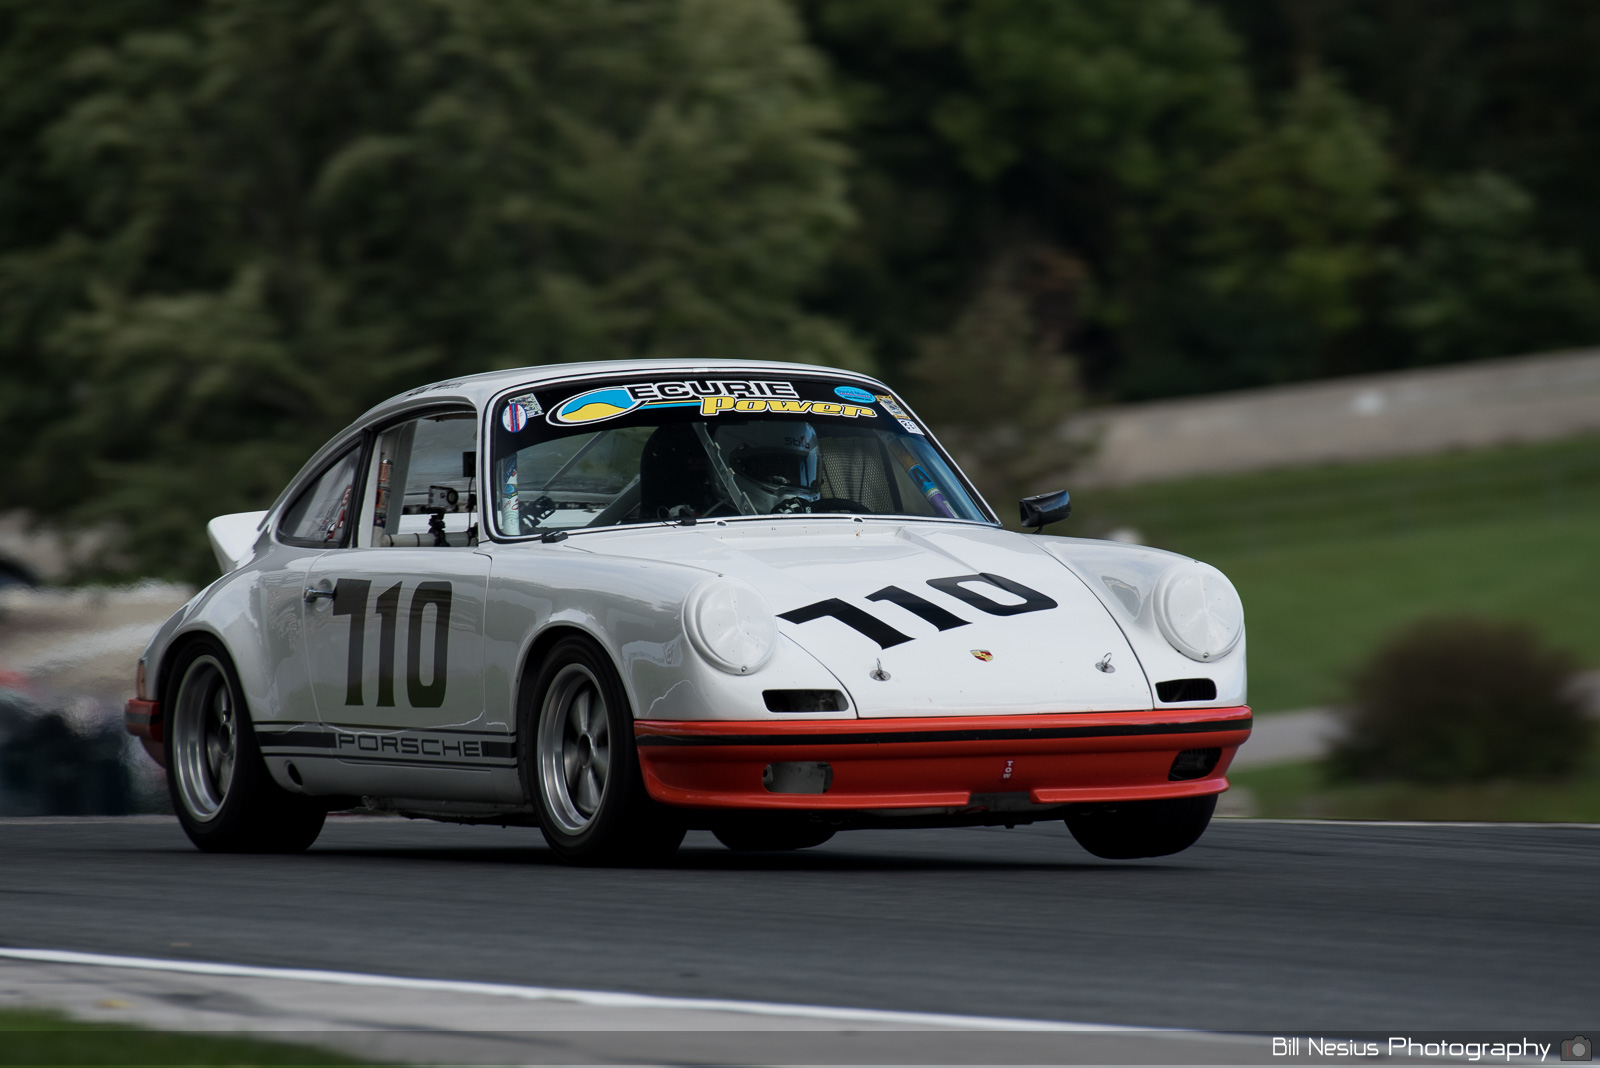 Porsche 911 Number 110 / DSC_7799 / 4